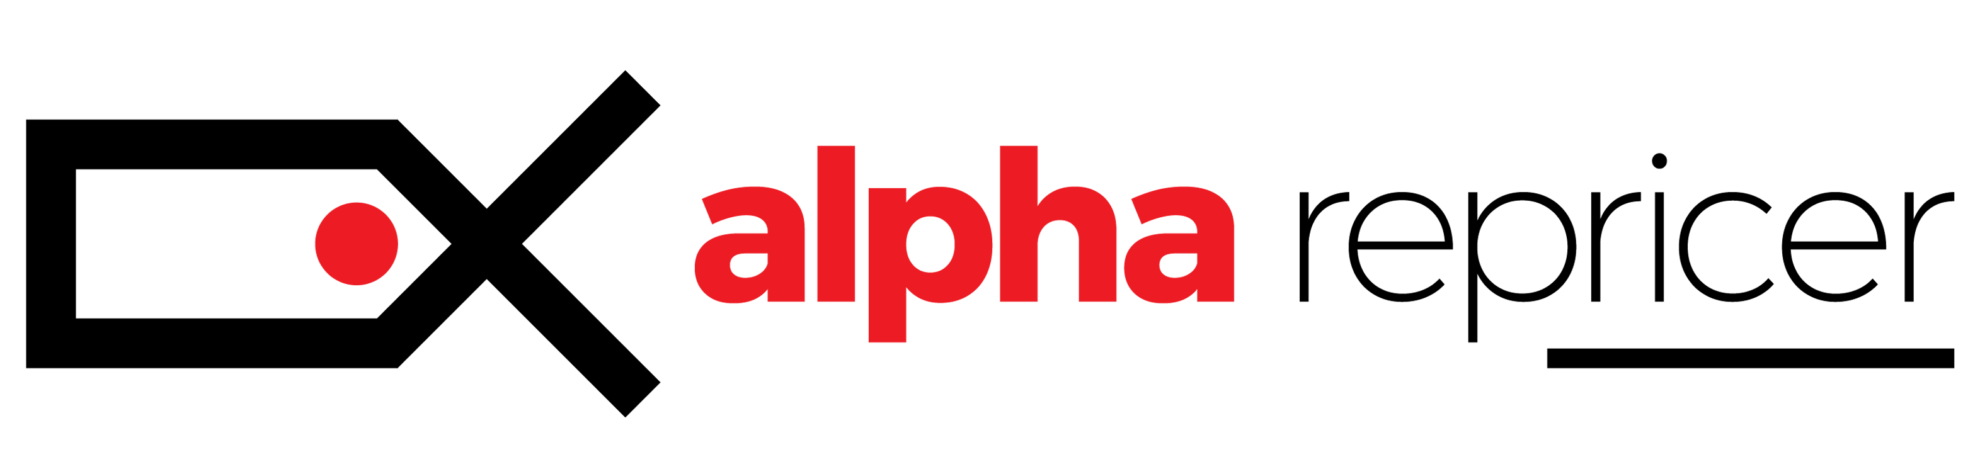 Alpha Repricer logo